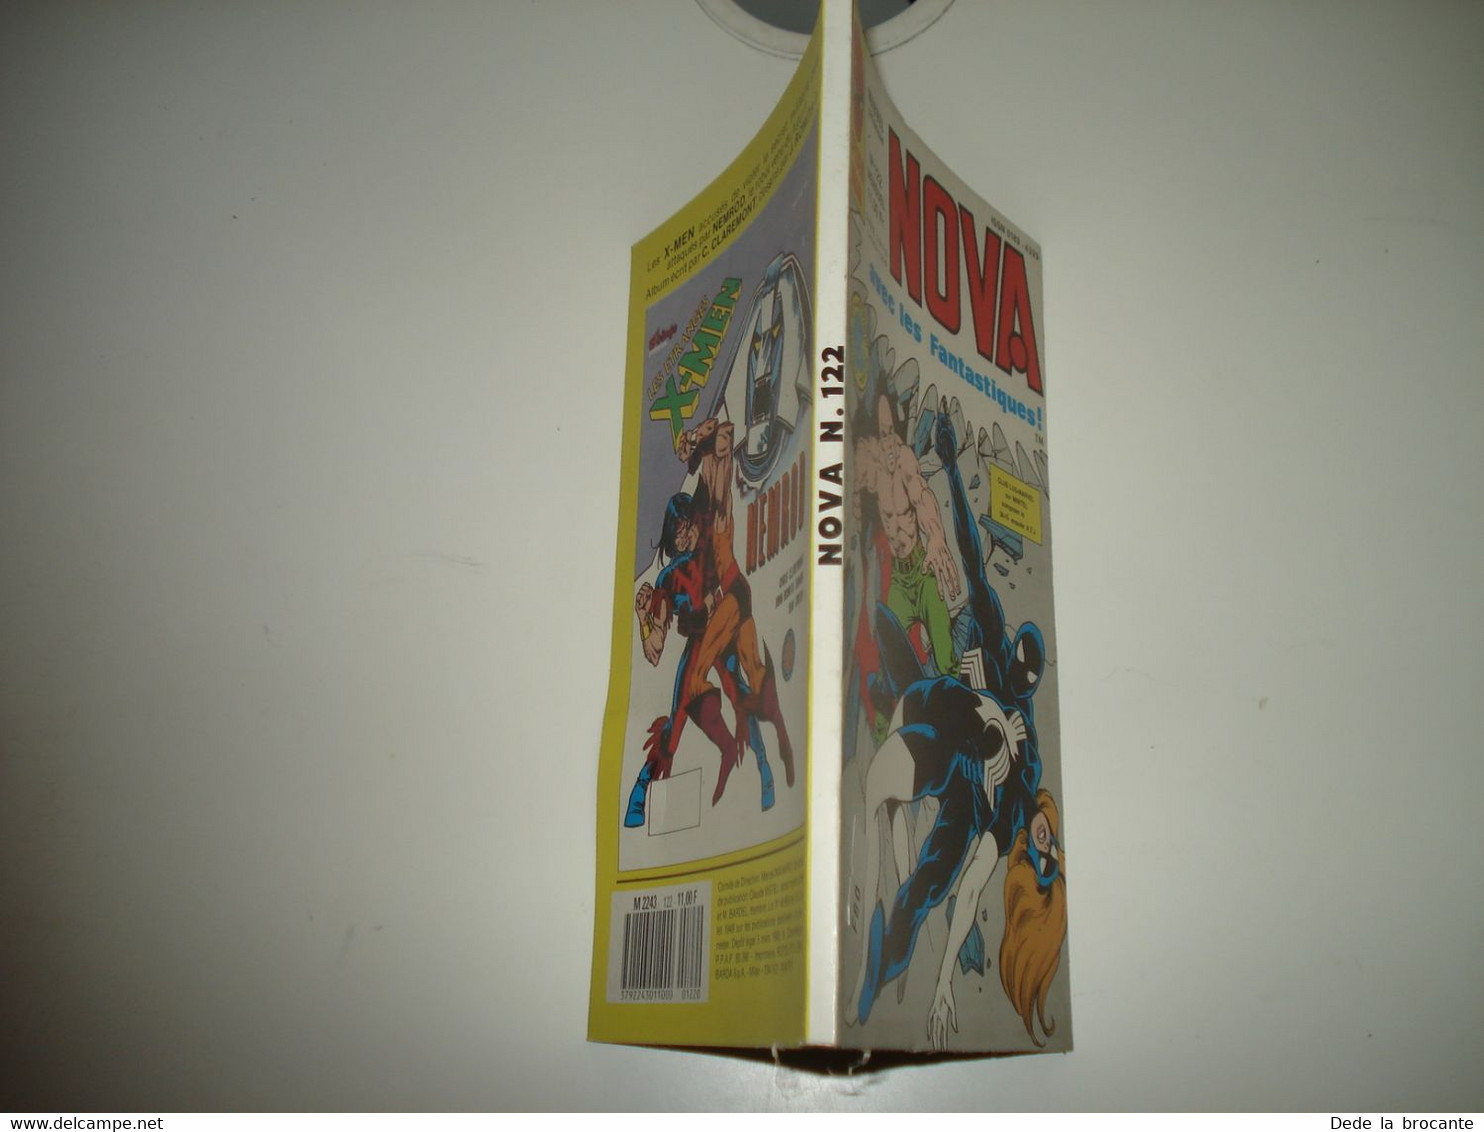 C22 / Spider Man -  Marvel Présente - NOVA  N° 122  -  LUG De  1988  Comme Neuf - Nova